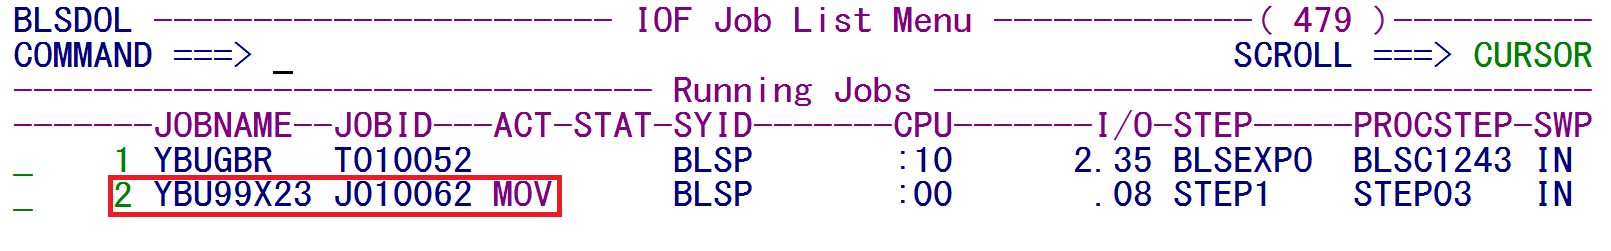 038 - running jobs.png